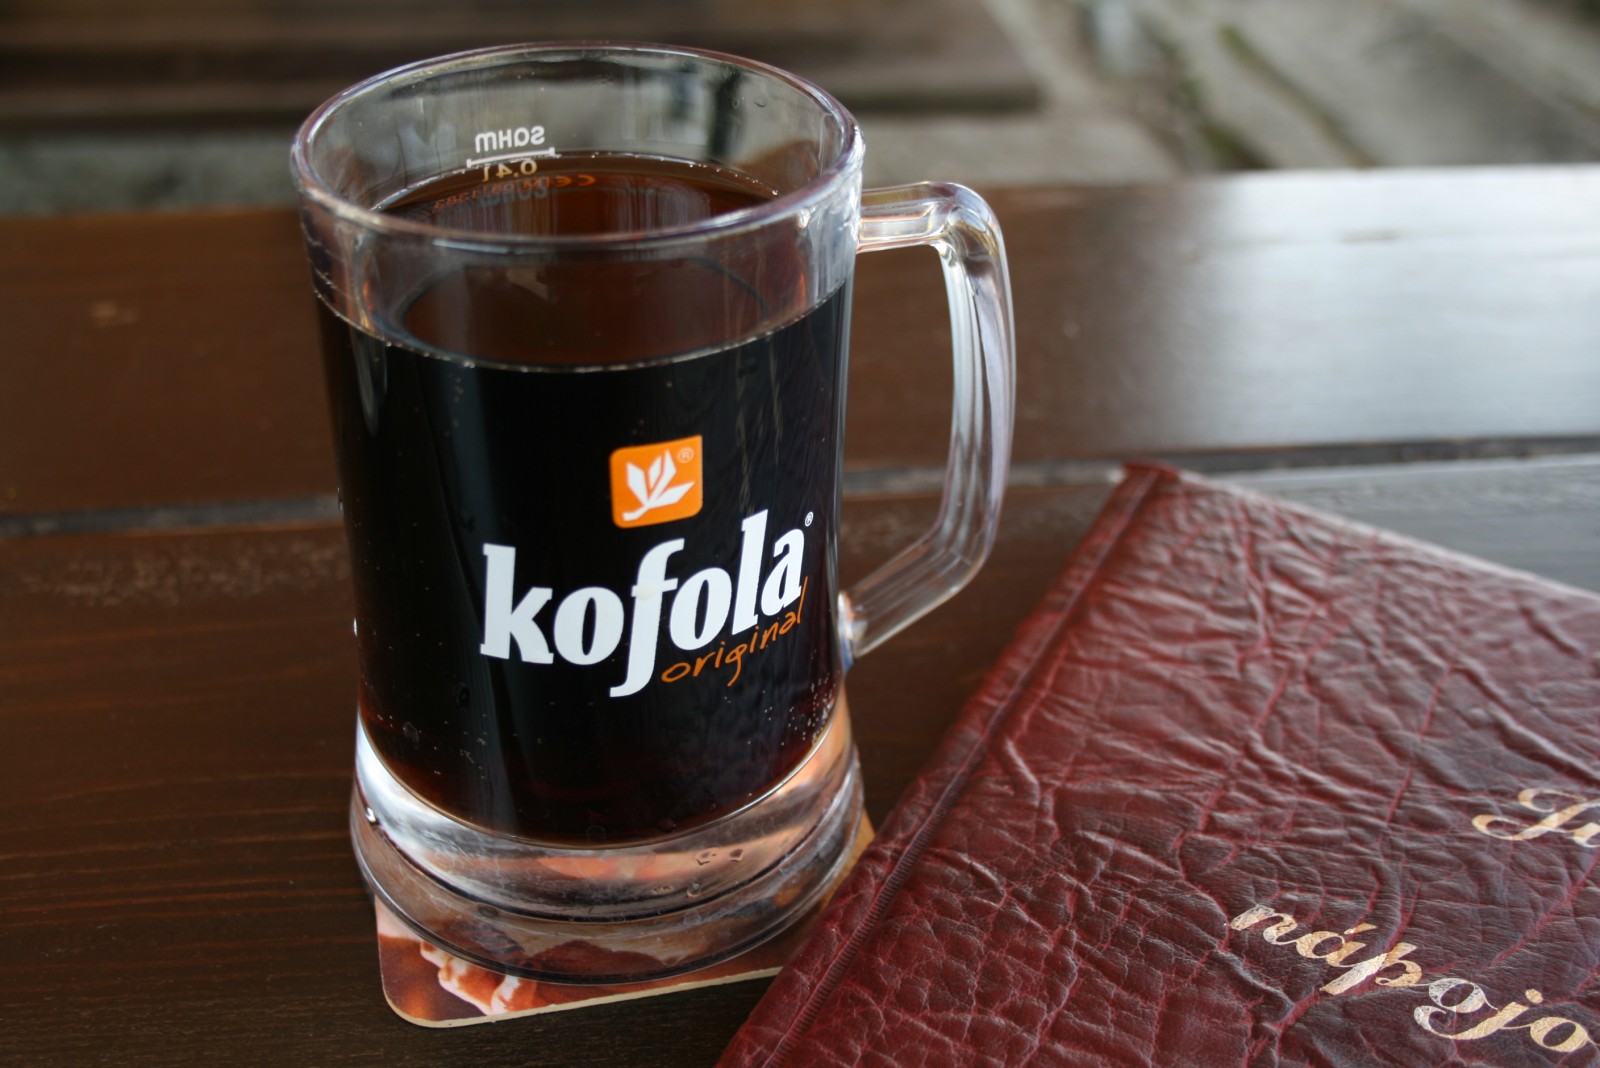 Glass of Kofola